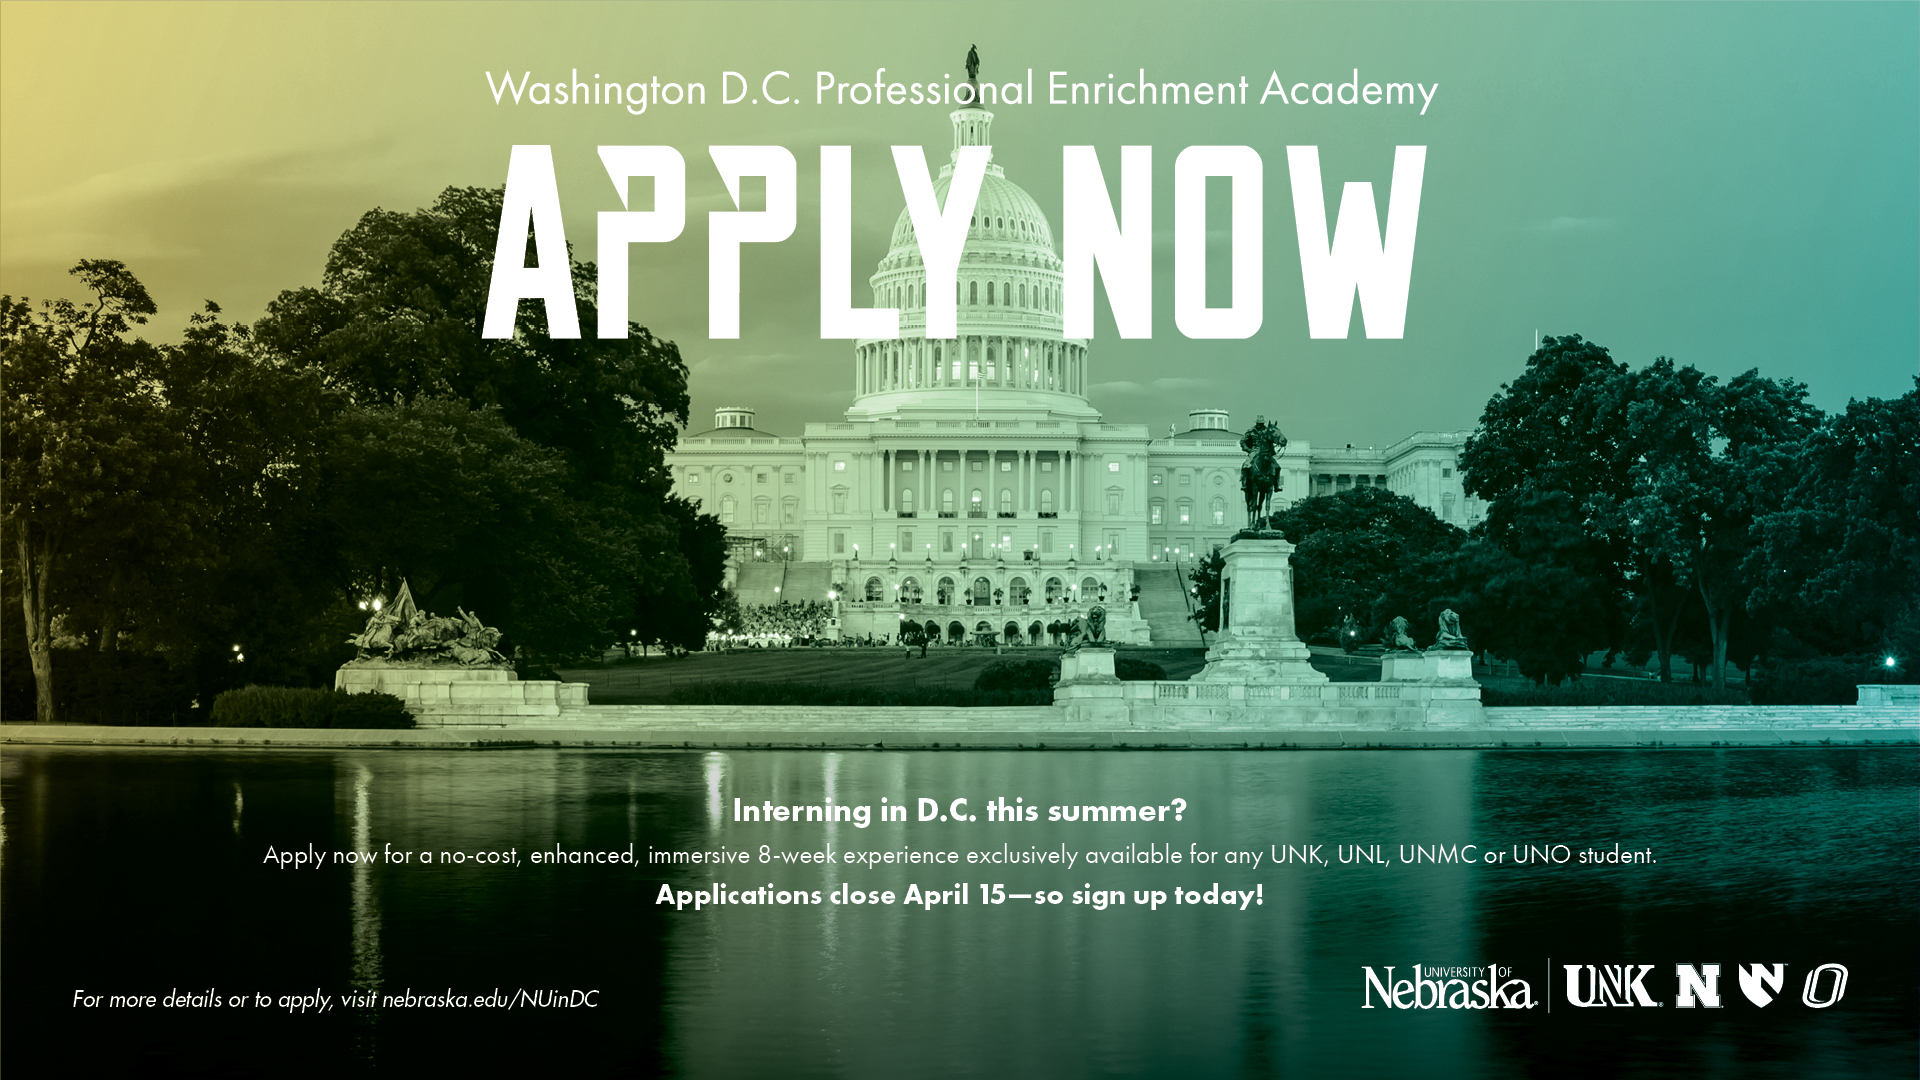 Washington D.C. Professional Enrichment Academy